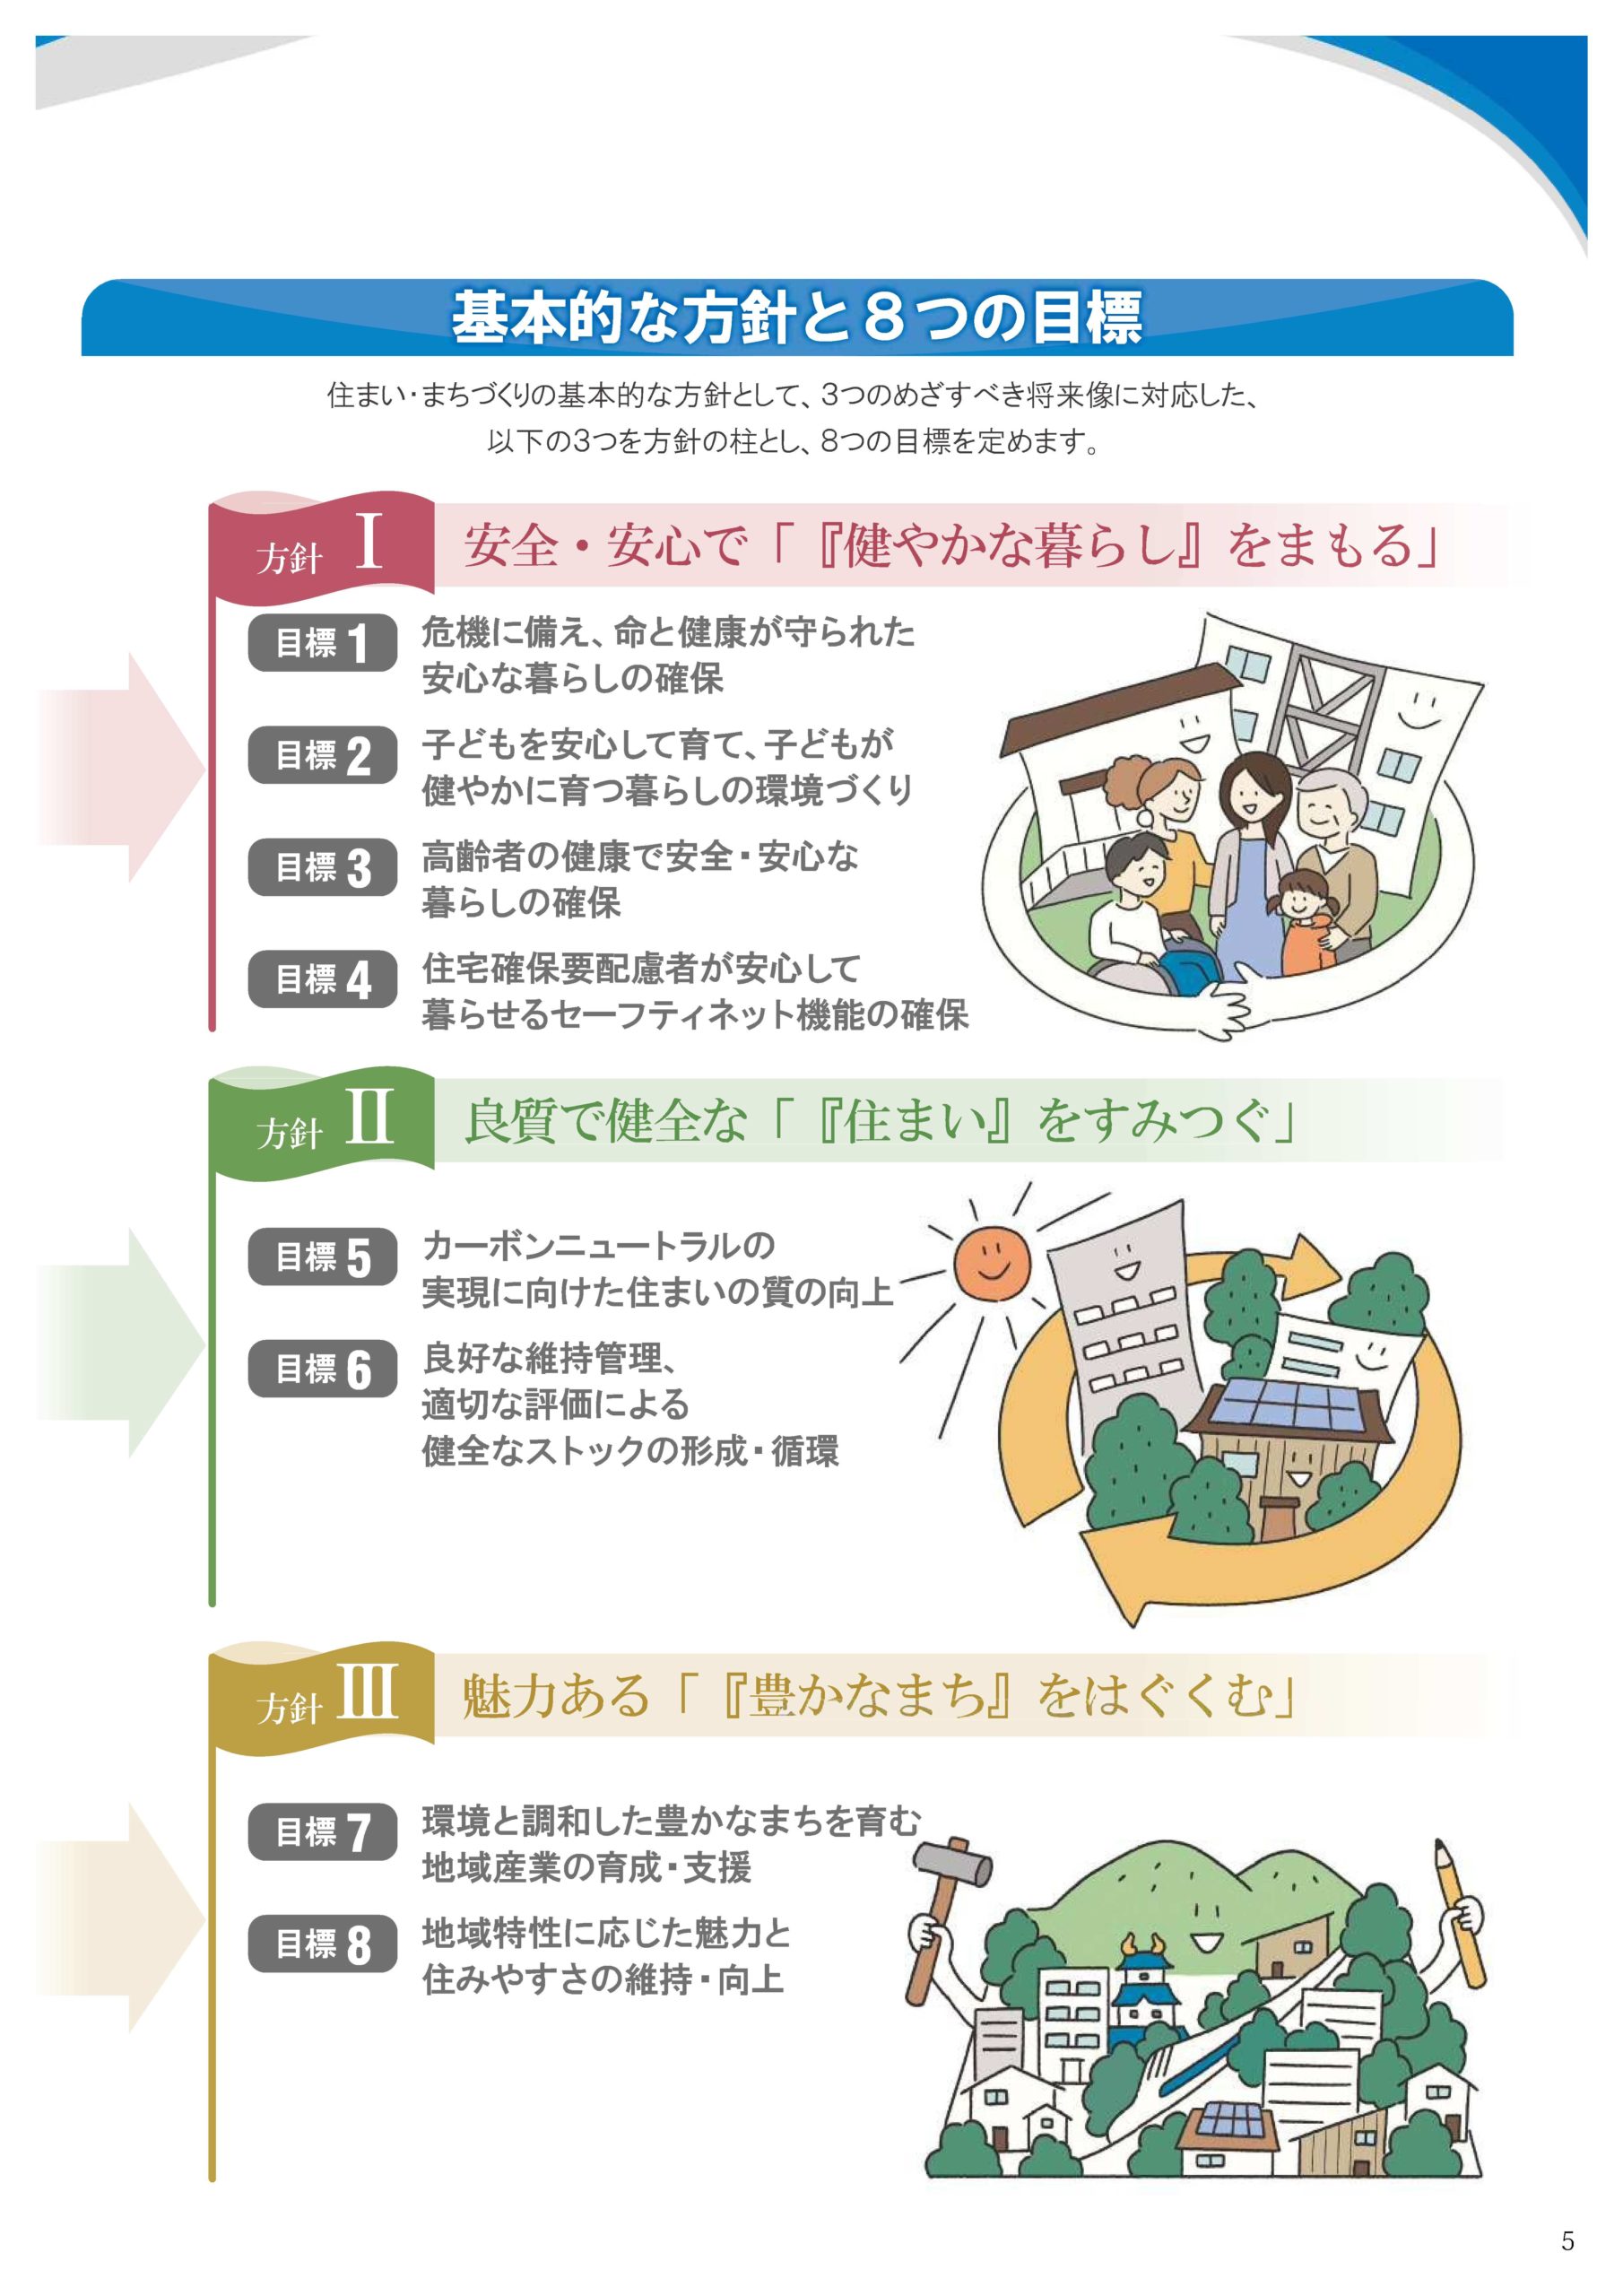 愛知県住生活基本計画策定業務